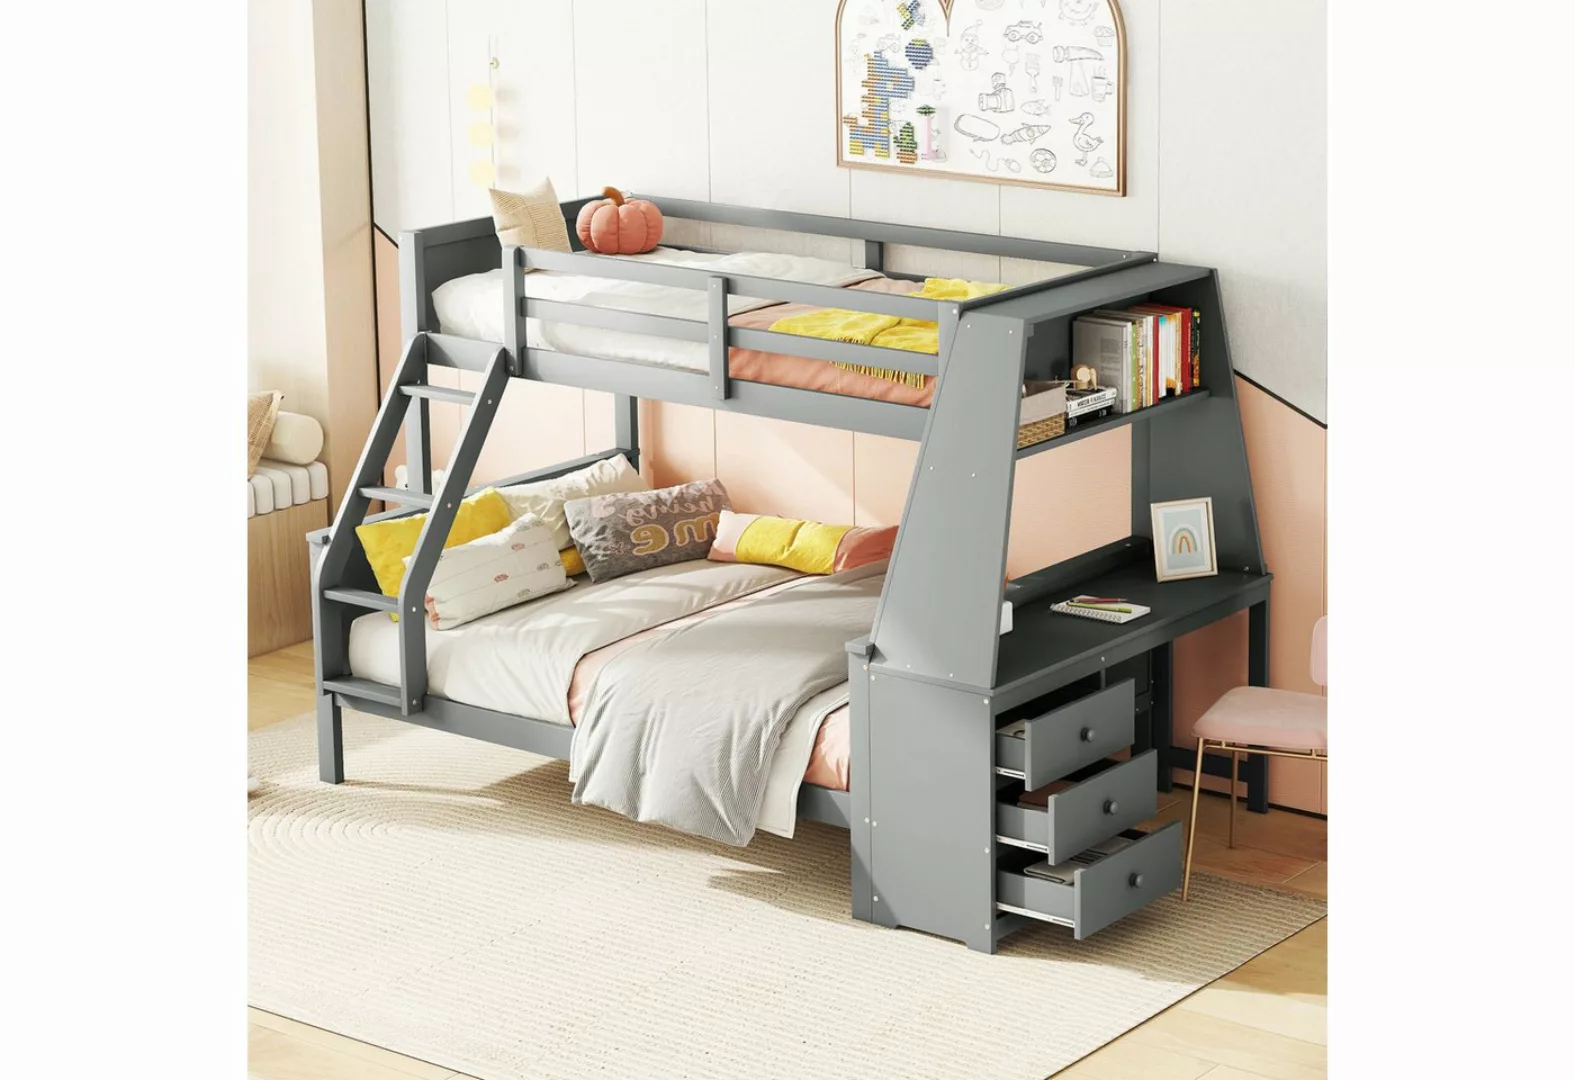 REDOM Etagenbett Kinderbett, ausgestattet mit Tisch, großer Stauraum, hohes günstig online kaufen